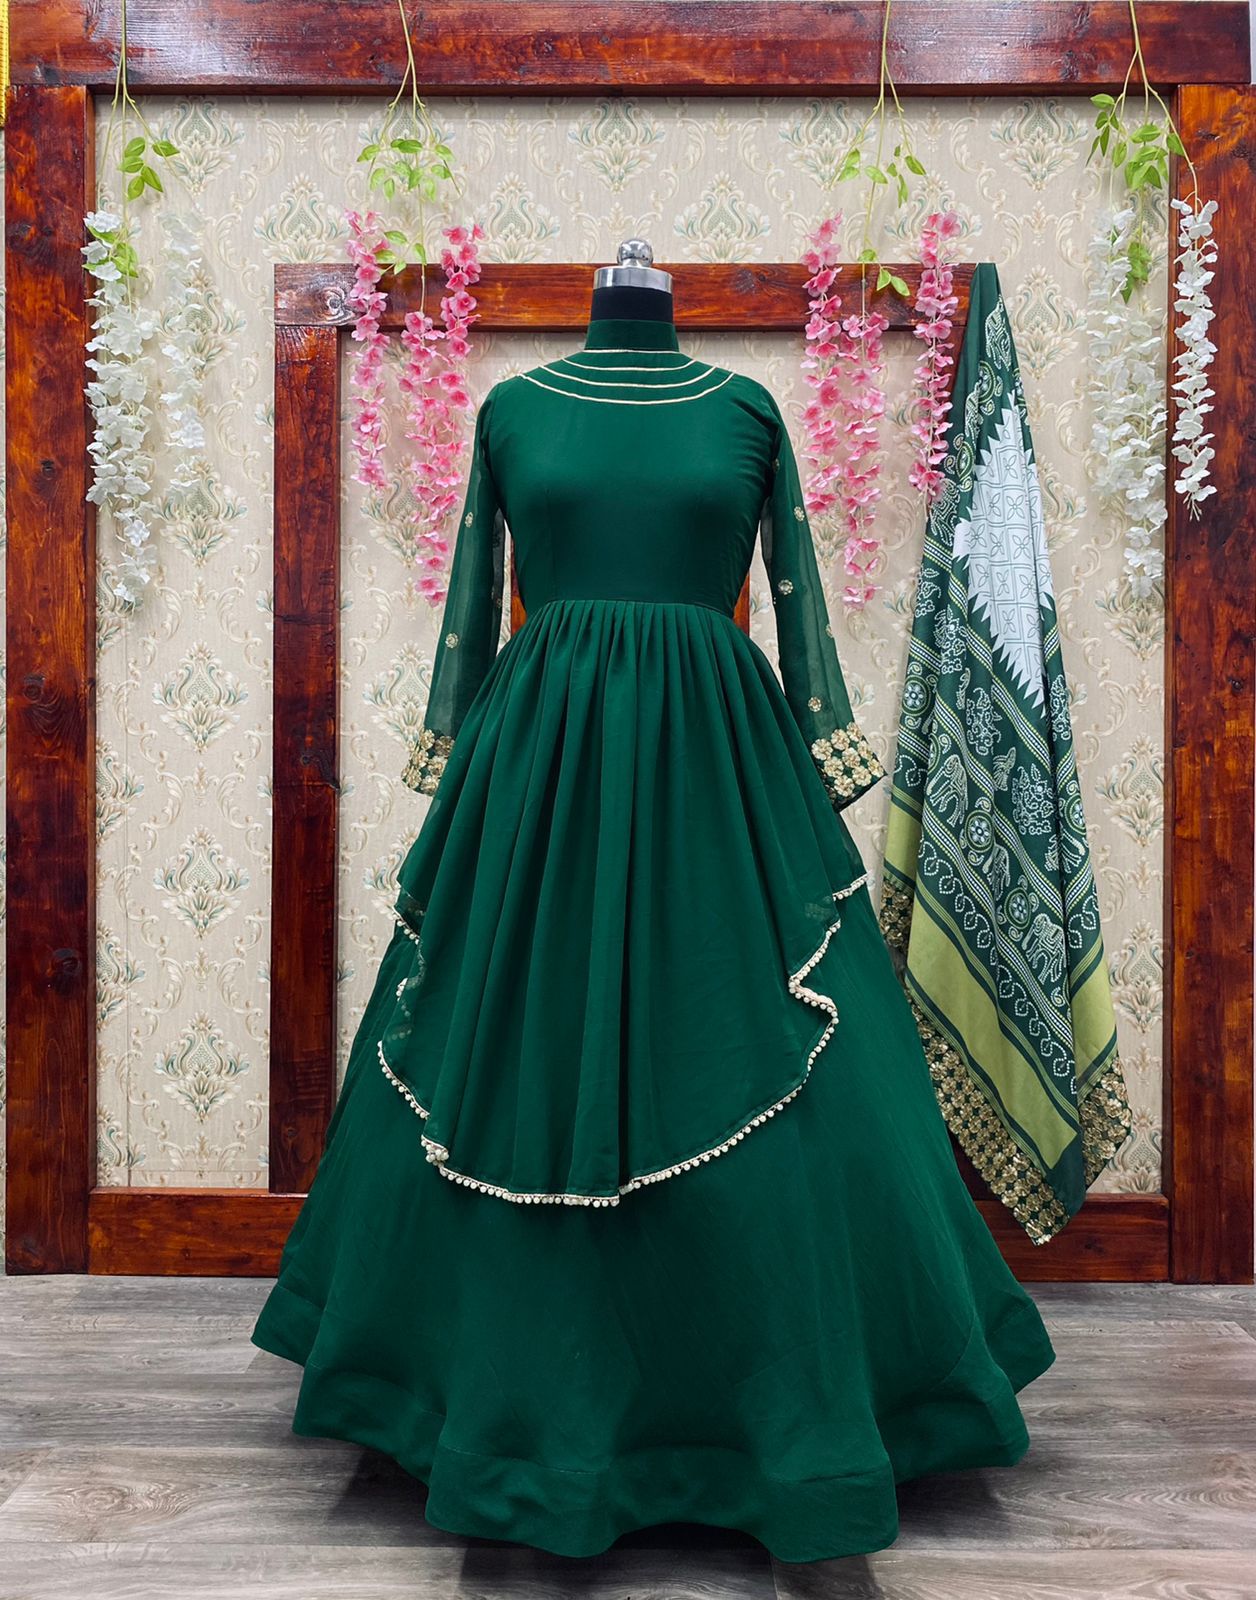 Green Long Dress | Miami Fashion Design [ Handmade Fashion Gowns ] – BACCIO  by Altamirano